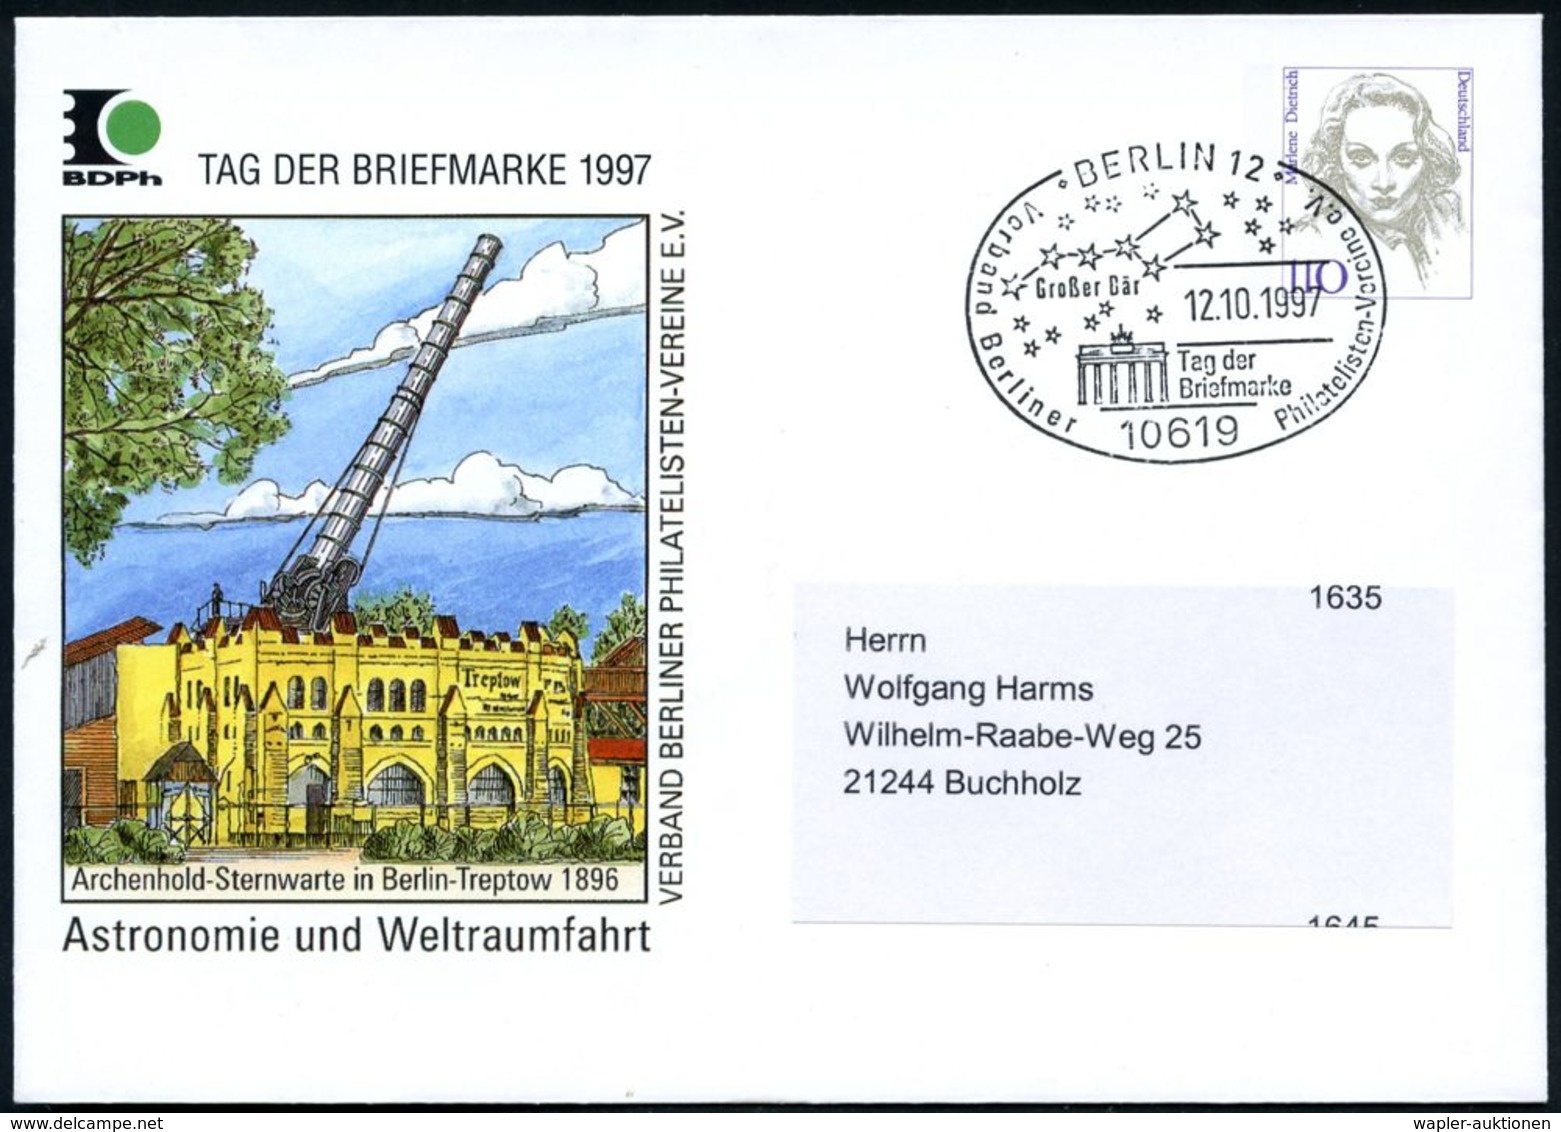 10619 BERLIN 12/ Großer Bär/ Tag Der/ Briefmarke.. 1997 (12.10.) SSt = Sternbild "Gr. Bär" (Gr. Wagen) U. Branden-bg. To - Astronomie